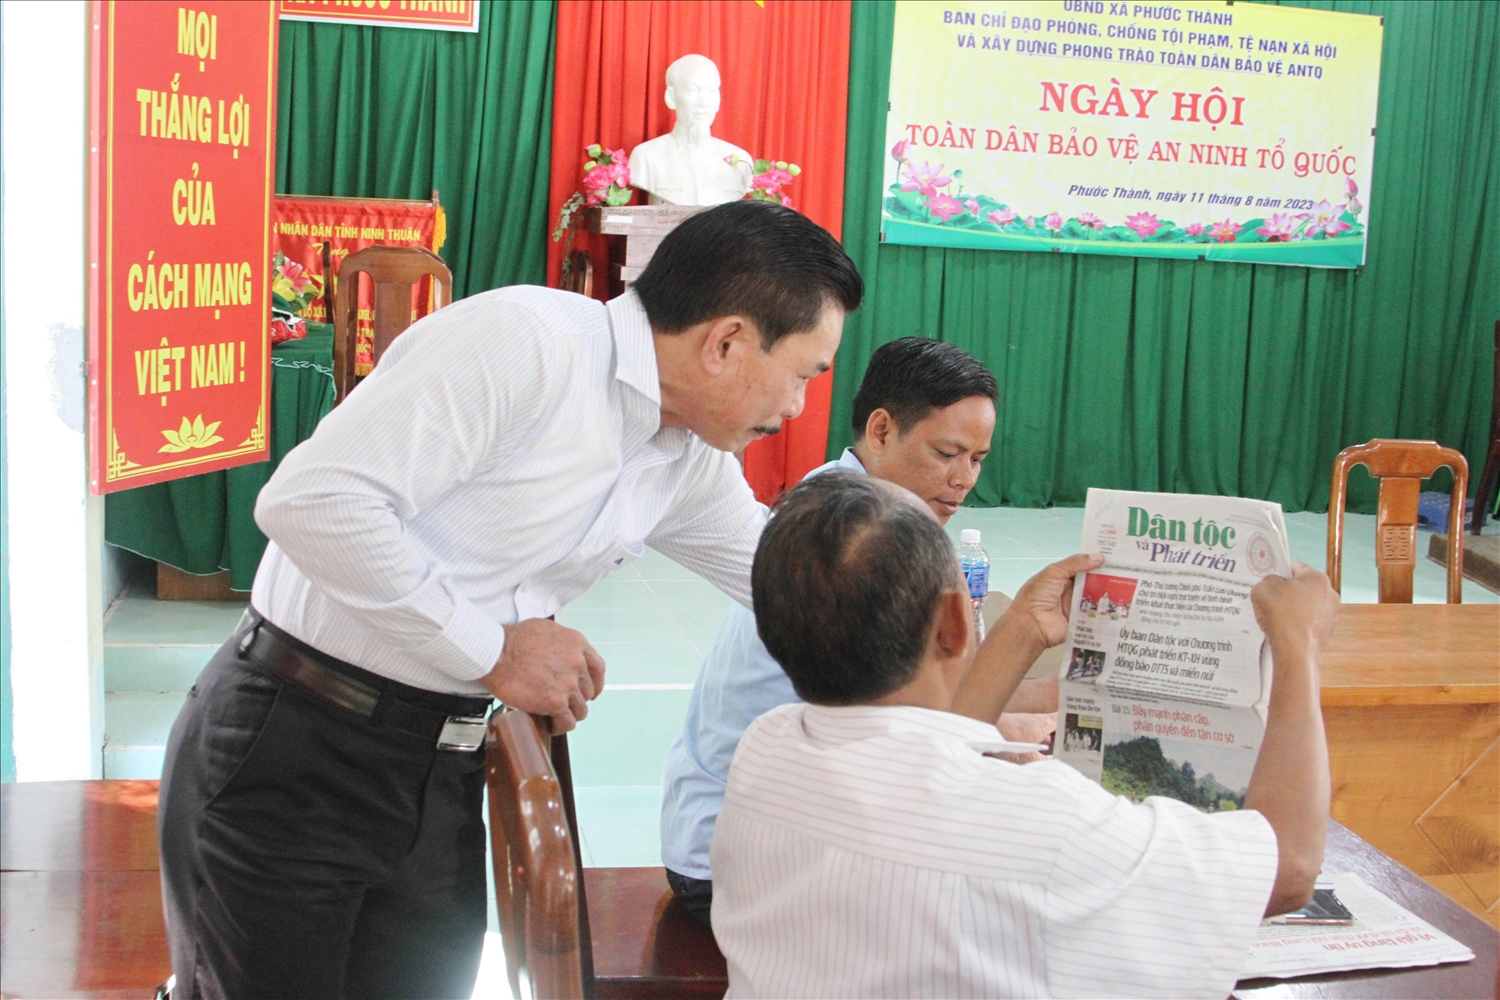 Ông Lê Công Bình, Tổng Biên tập Báo Dân tộc và Phát triển trao đổi với Người có uy tín xã Phước Thành về việc phát hành báo xuống cơ sở.